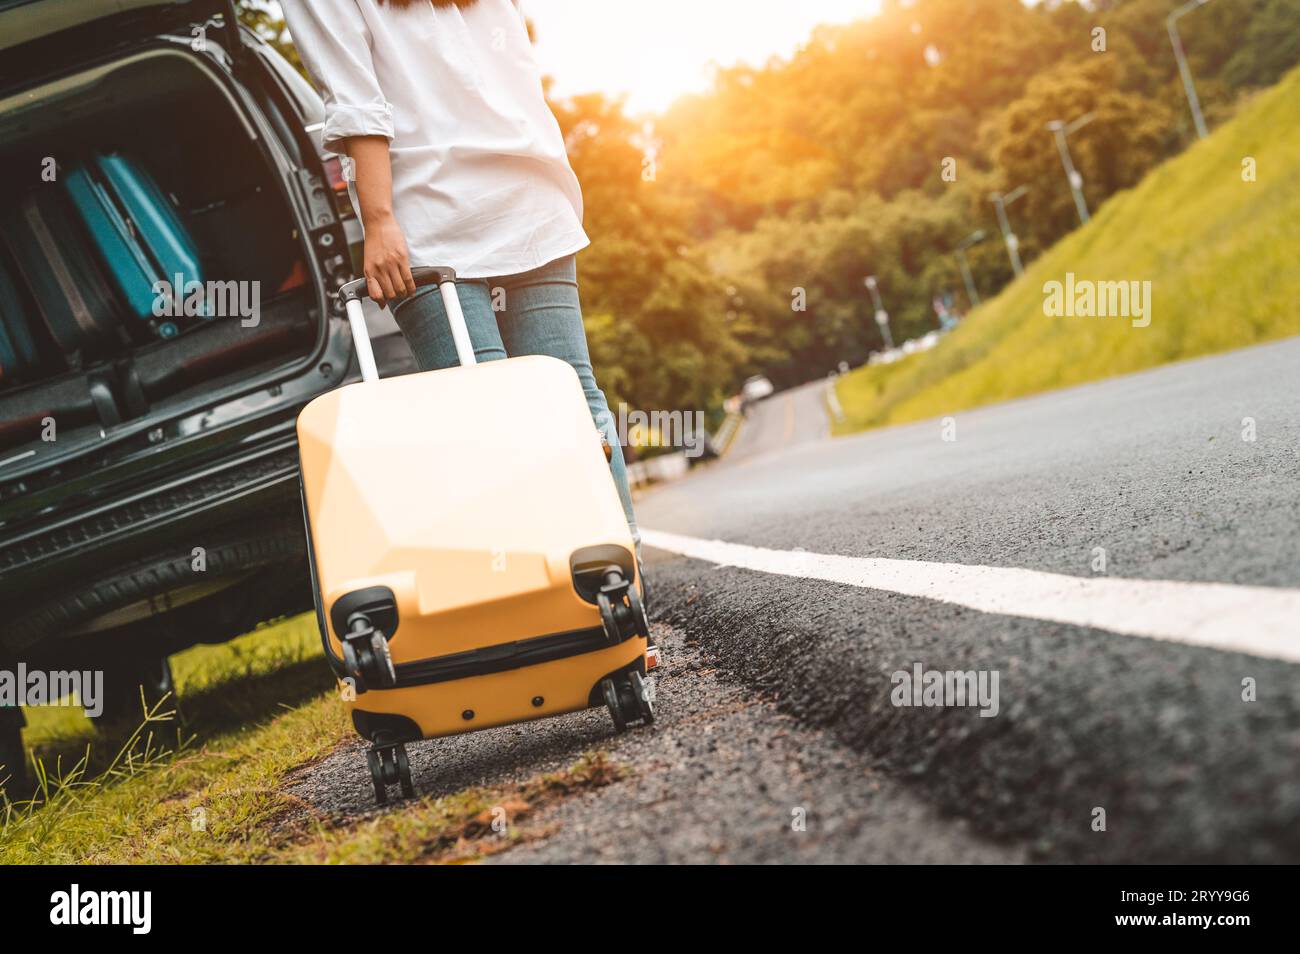 Vue arrière de la valise jaune traînant la valise à bagages seul voyage sur la route pour le chargement dans la voiture SUV. Styles de vie et vacances des gens Banque D'Images